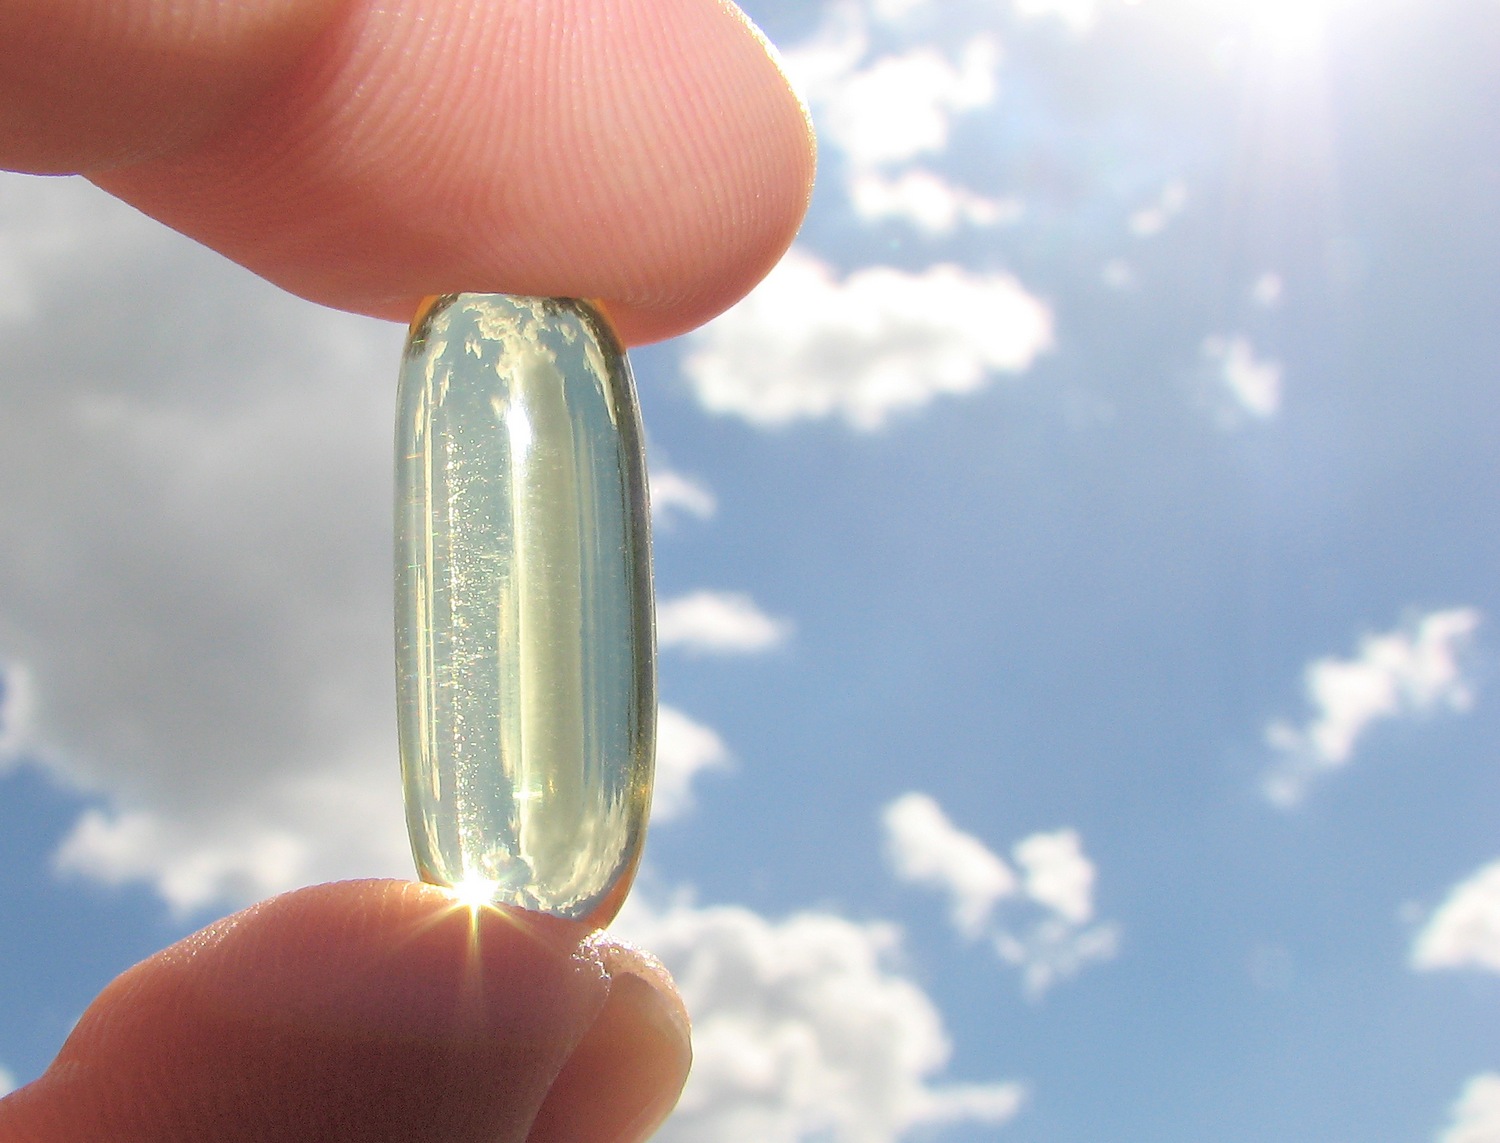 A 40 legjobb vitamin és természetes tápanyag a sikeres fogyás érdekében